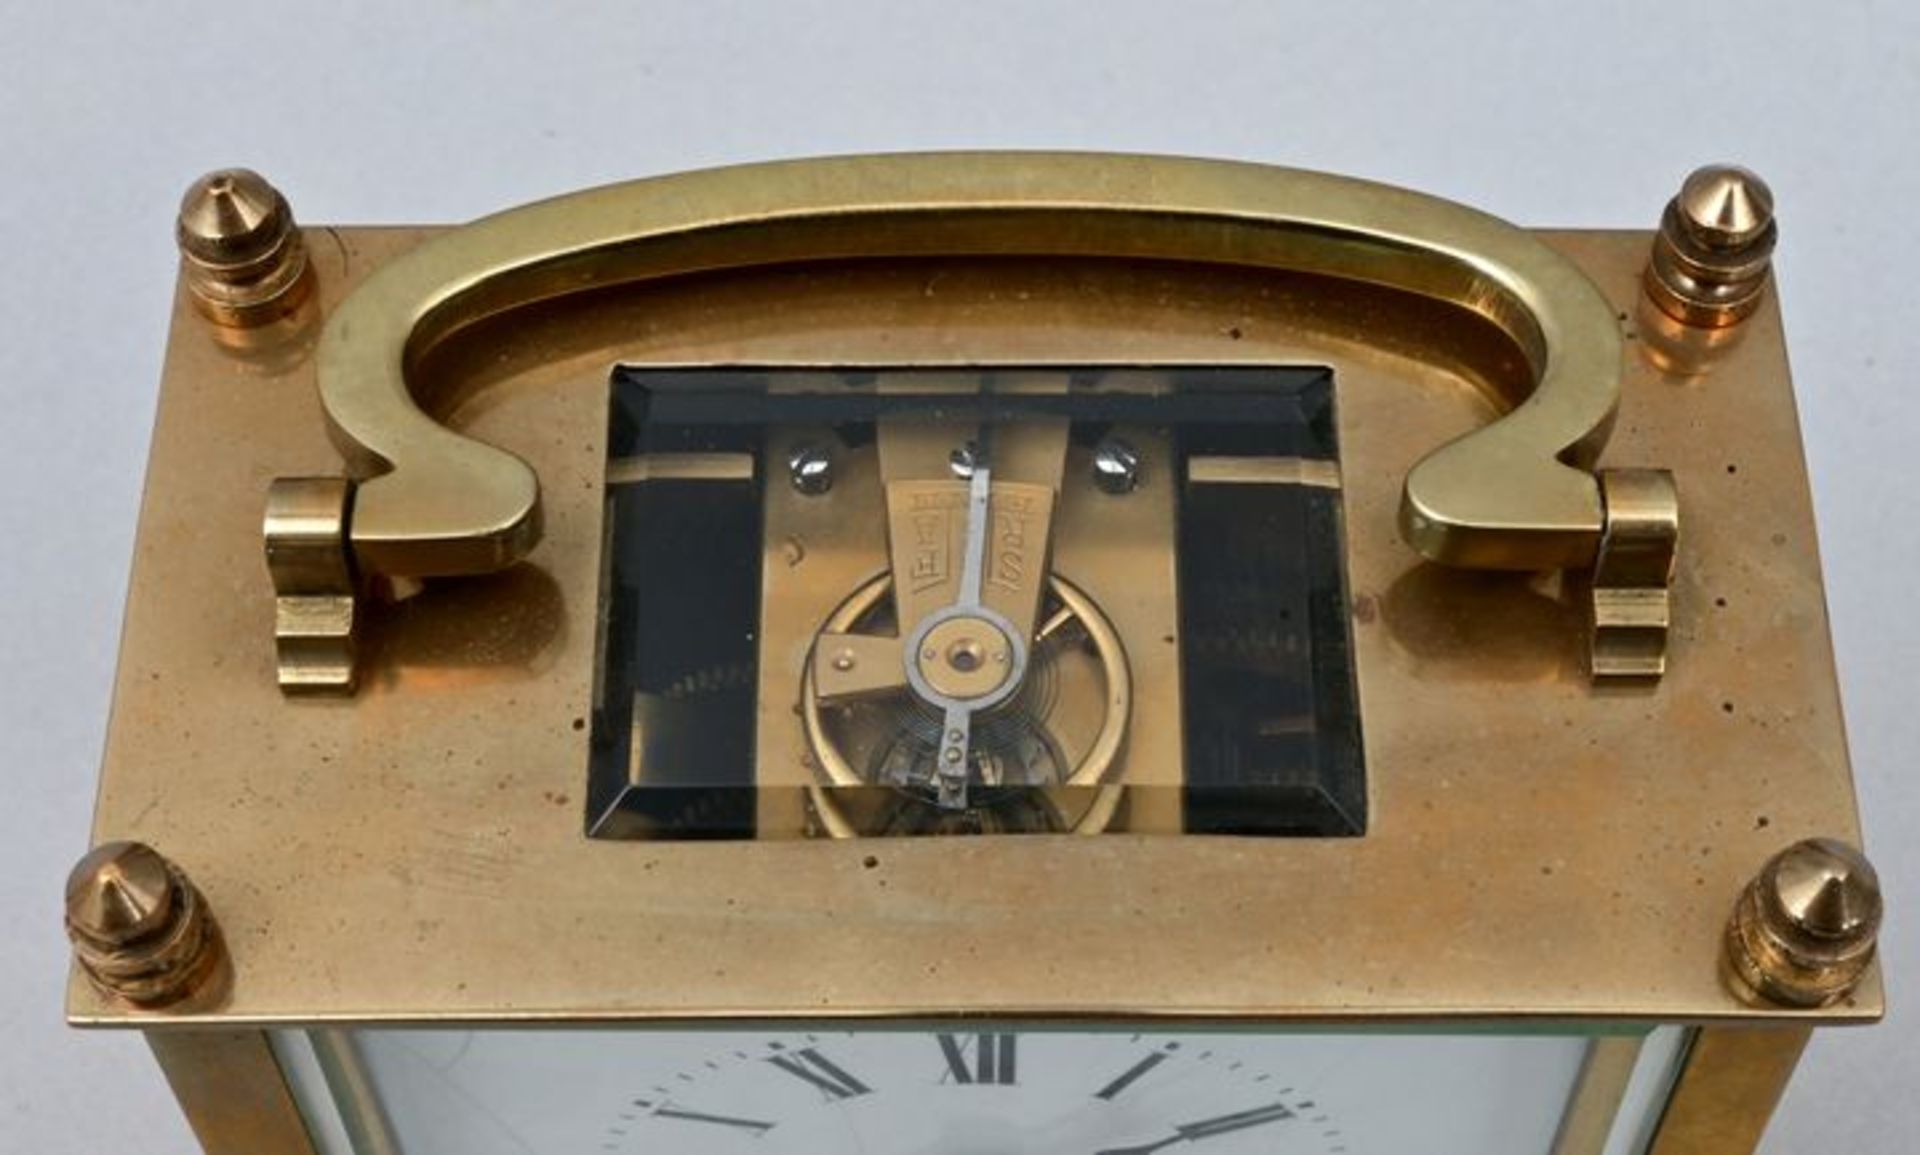 Reisewecker / Carriage clock with alarm - Bild 5 aus 5